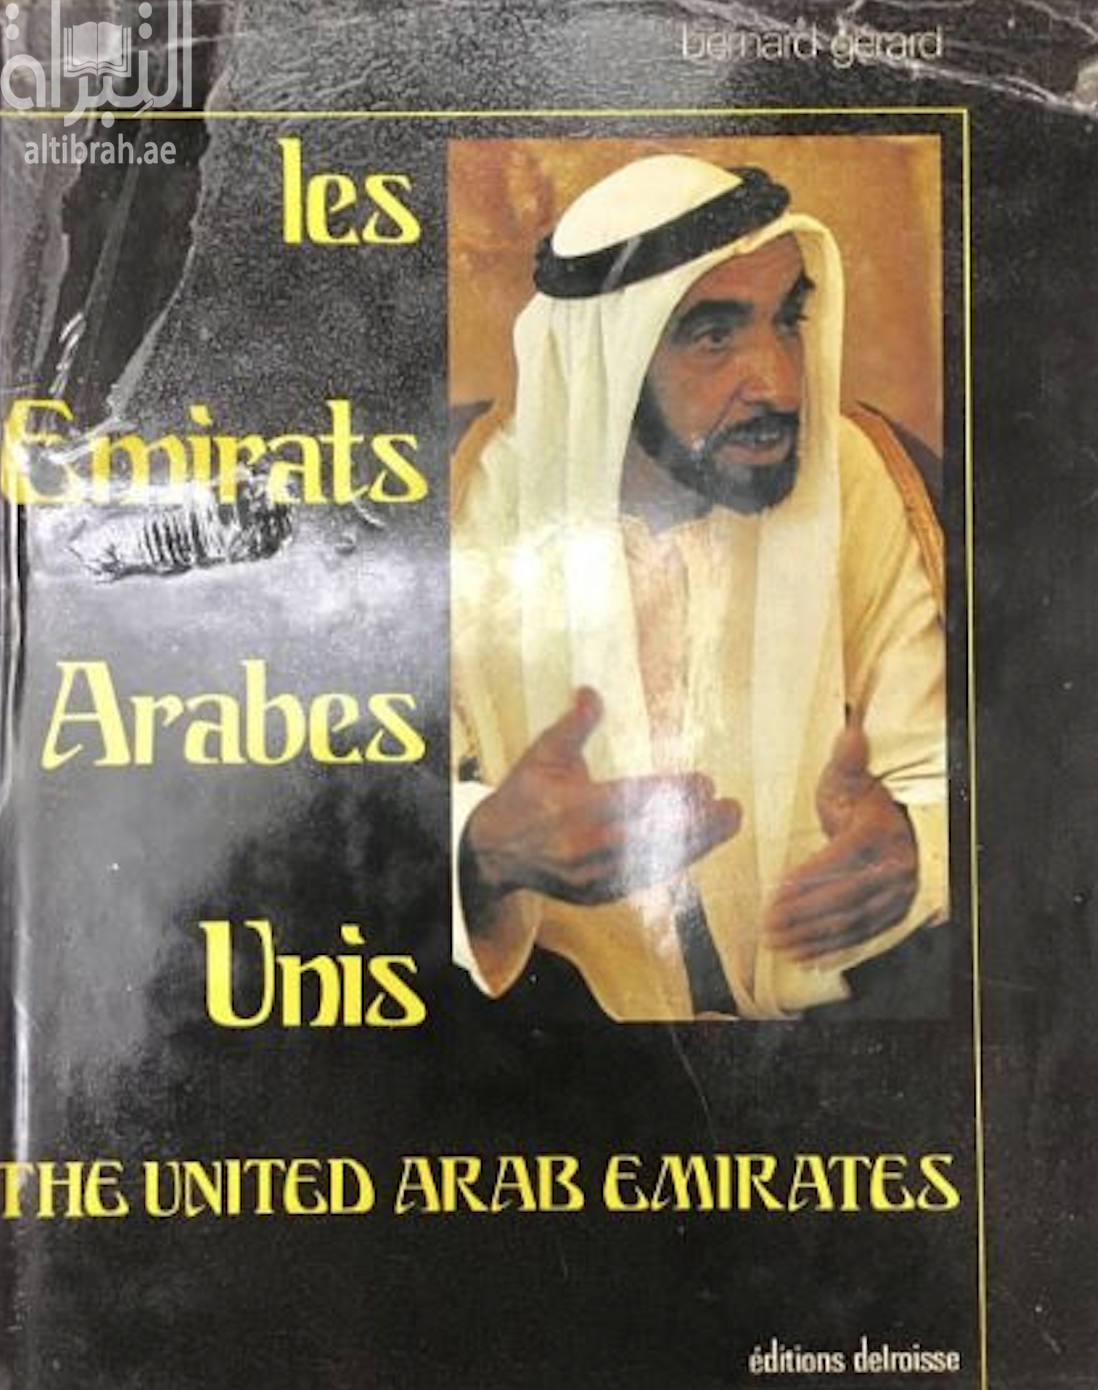 Les Emrats Arabes Unis : quinze ans de progress 1971 - 1986